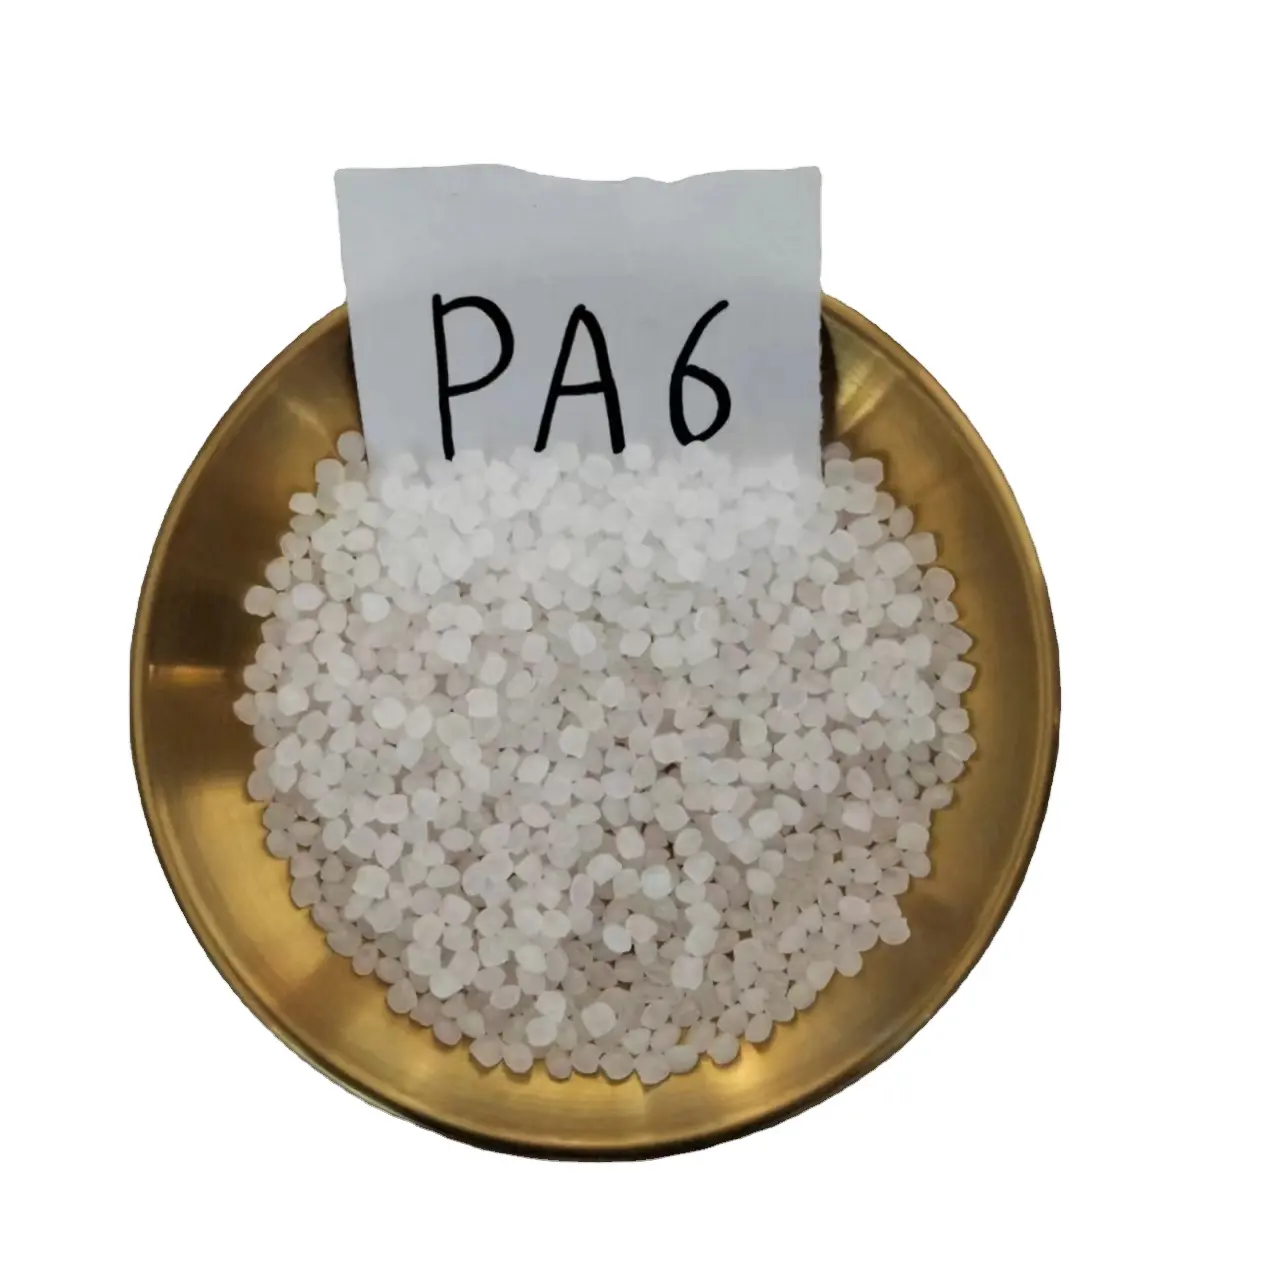 جودة عالية من الجسيمات PA6 مقاومة ممتازة للتآكل الكيميائي خاصية مستقرة للاستخدام في المعدات الكيميائية